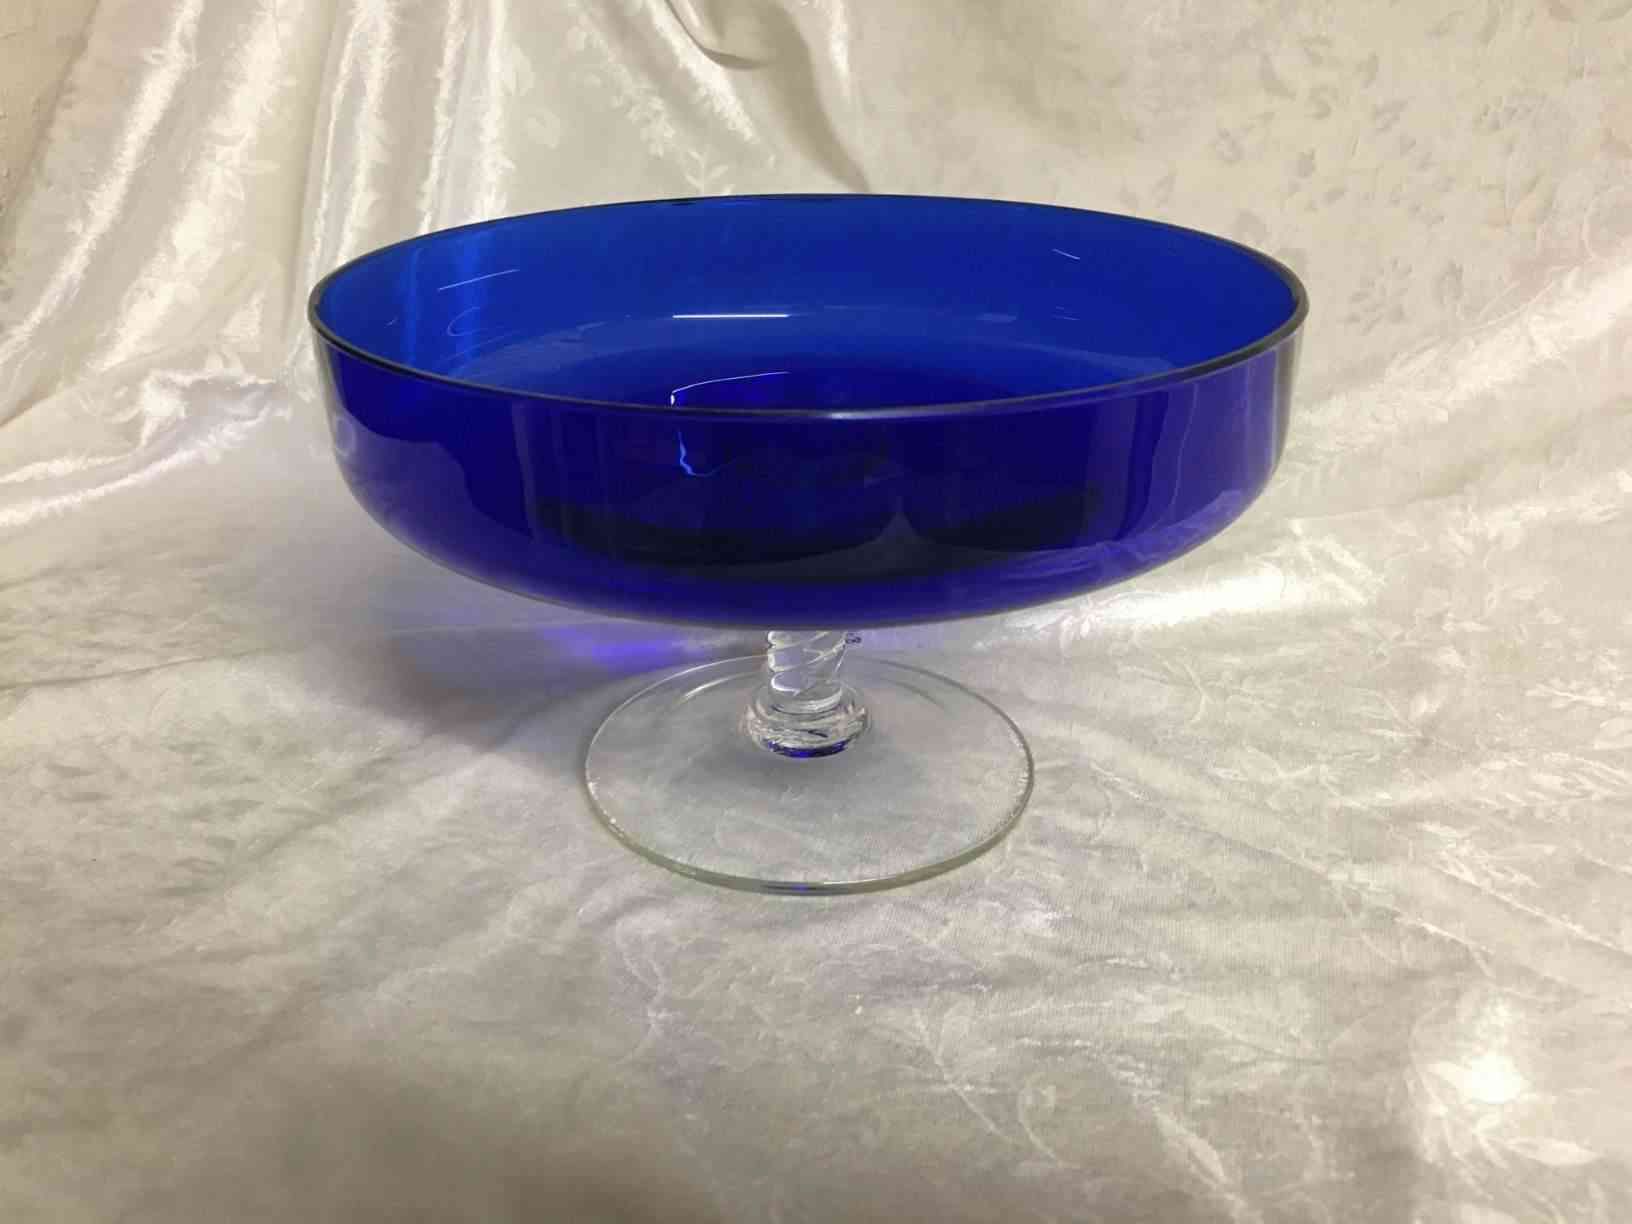 Opsats med twistet stilk i klart glas med glat blå kumme i perfekt stand. Pris: 600,- Kr.